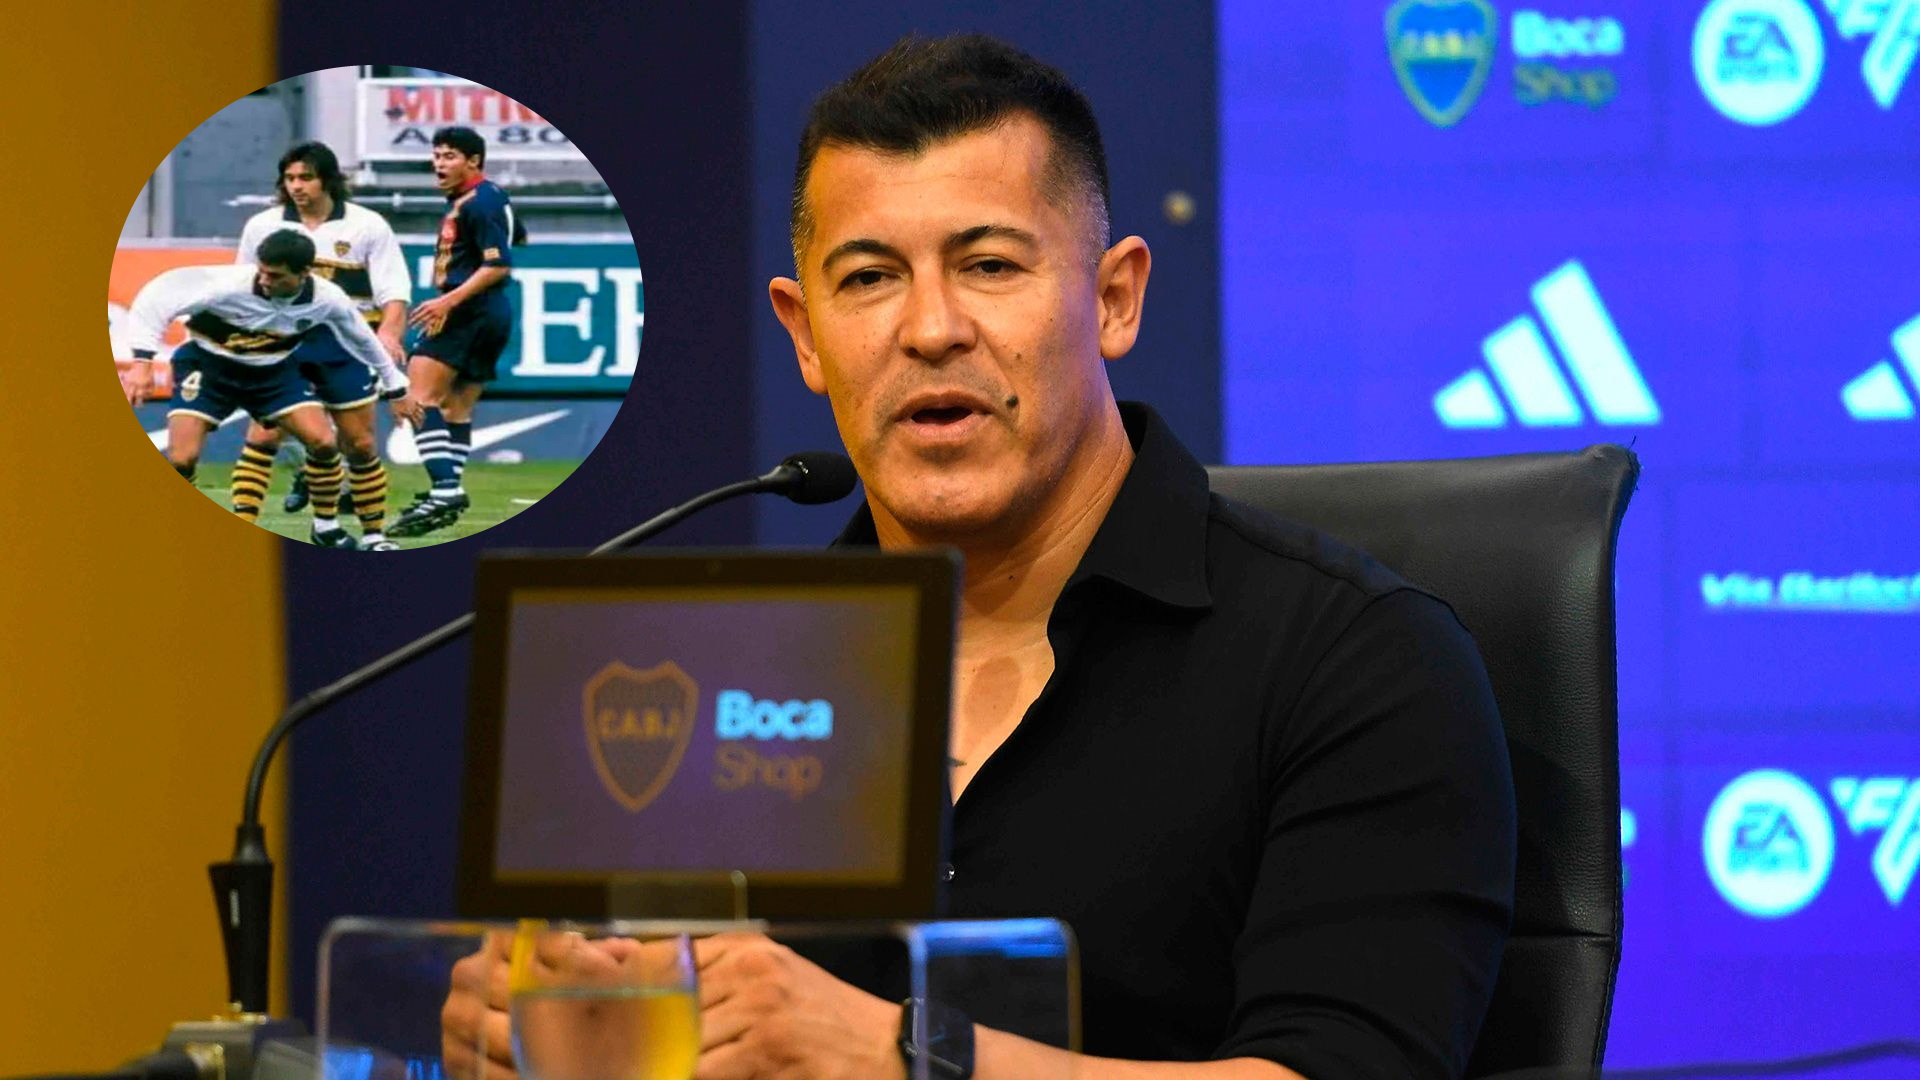 El gol que Jorge Almirón le hizo a Boca Juniors en un partido en La Bombonera que quedó en el recuerdo por una polémica: “Me cambió la carrera”